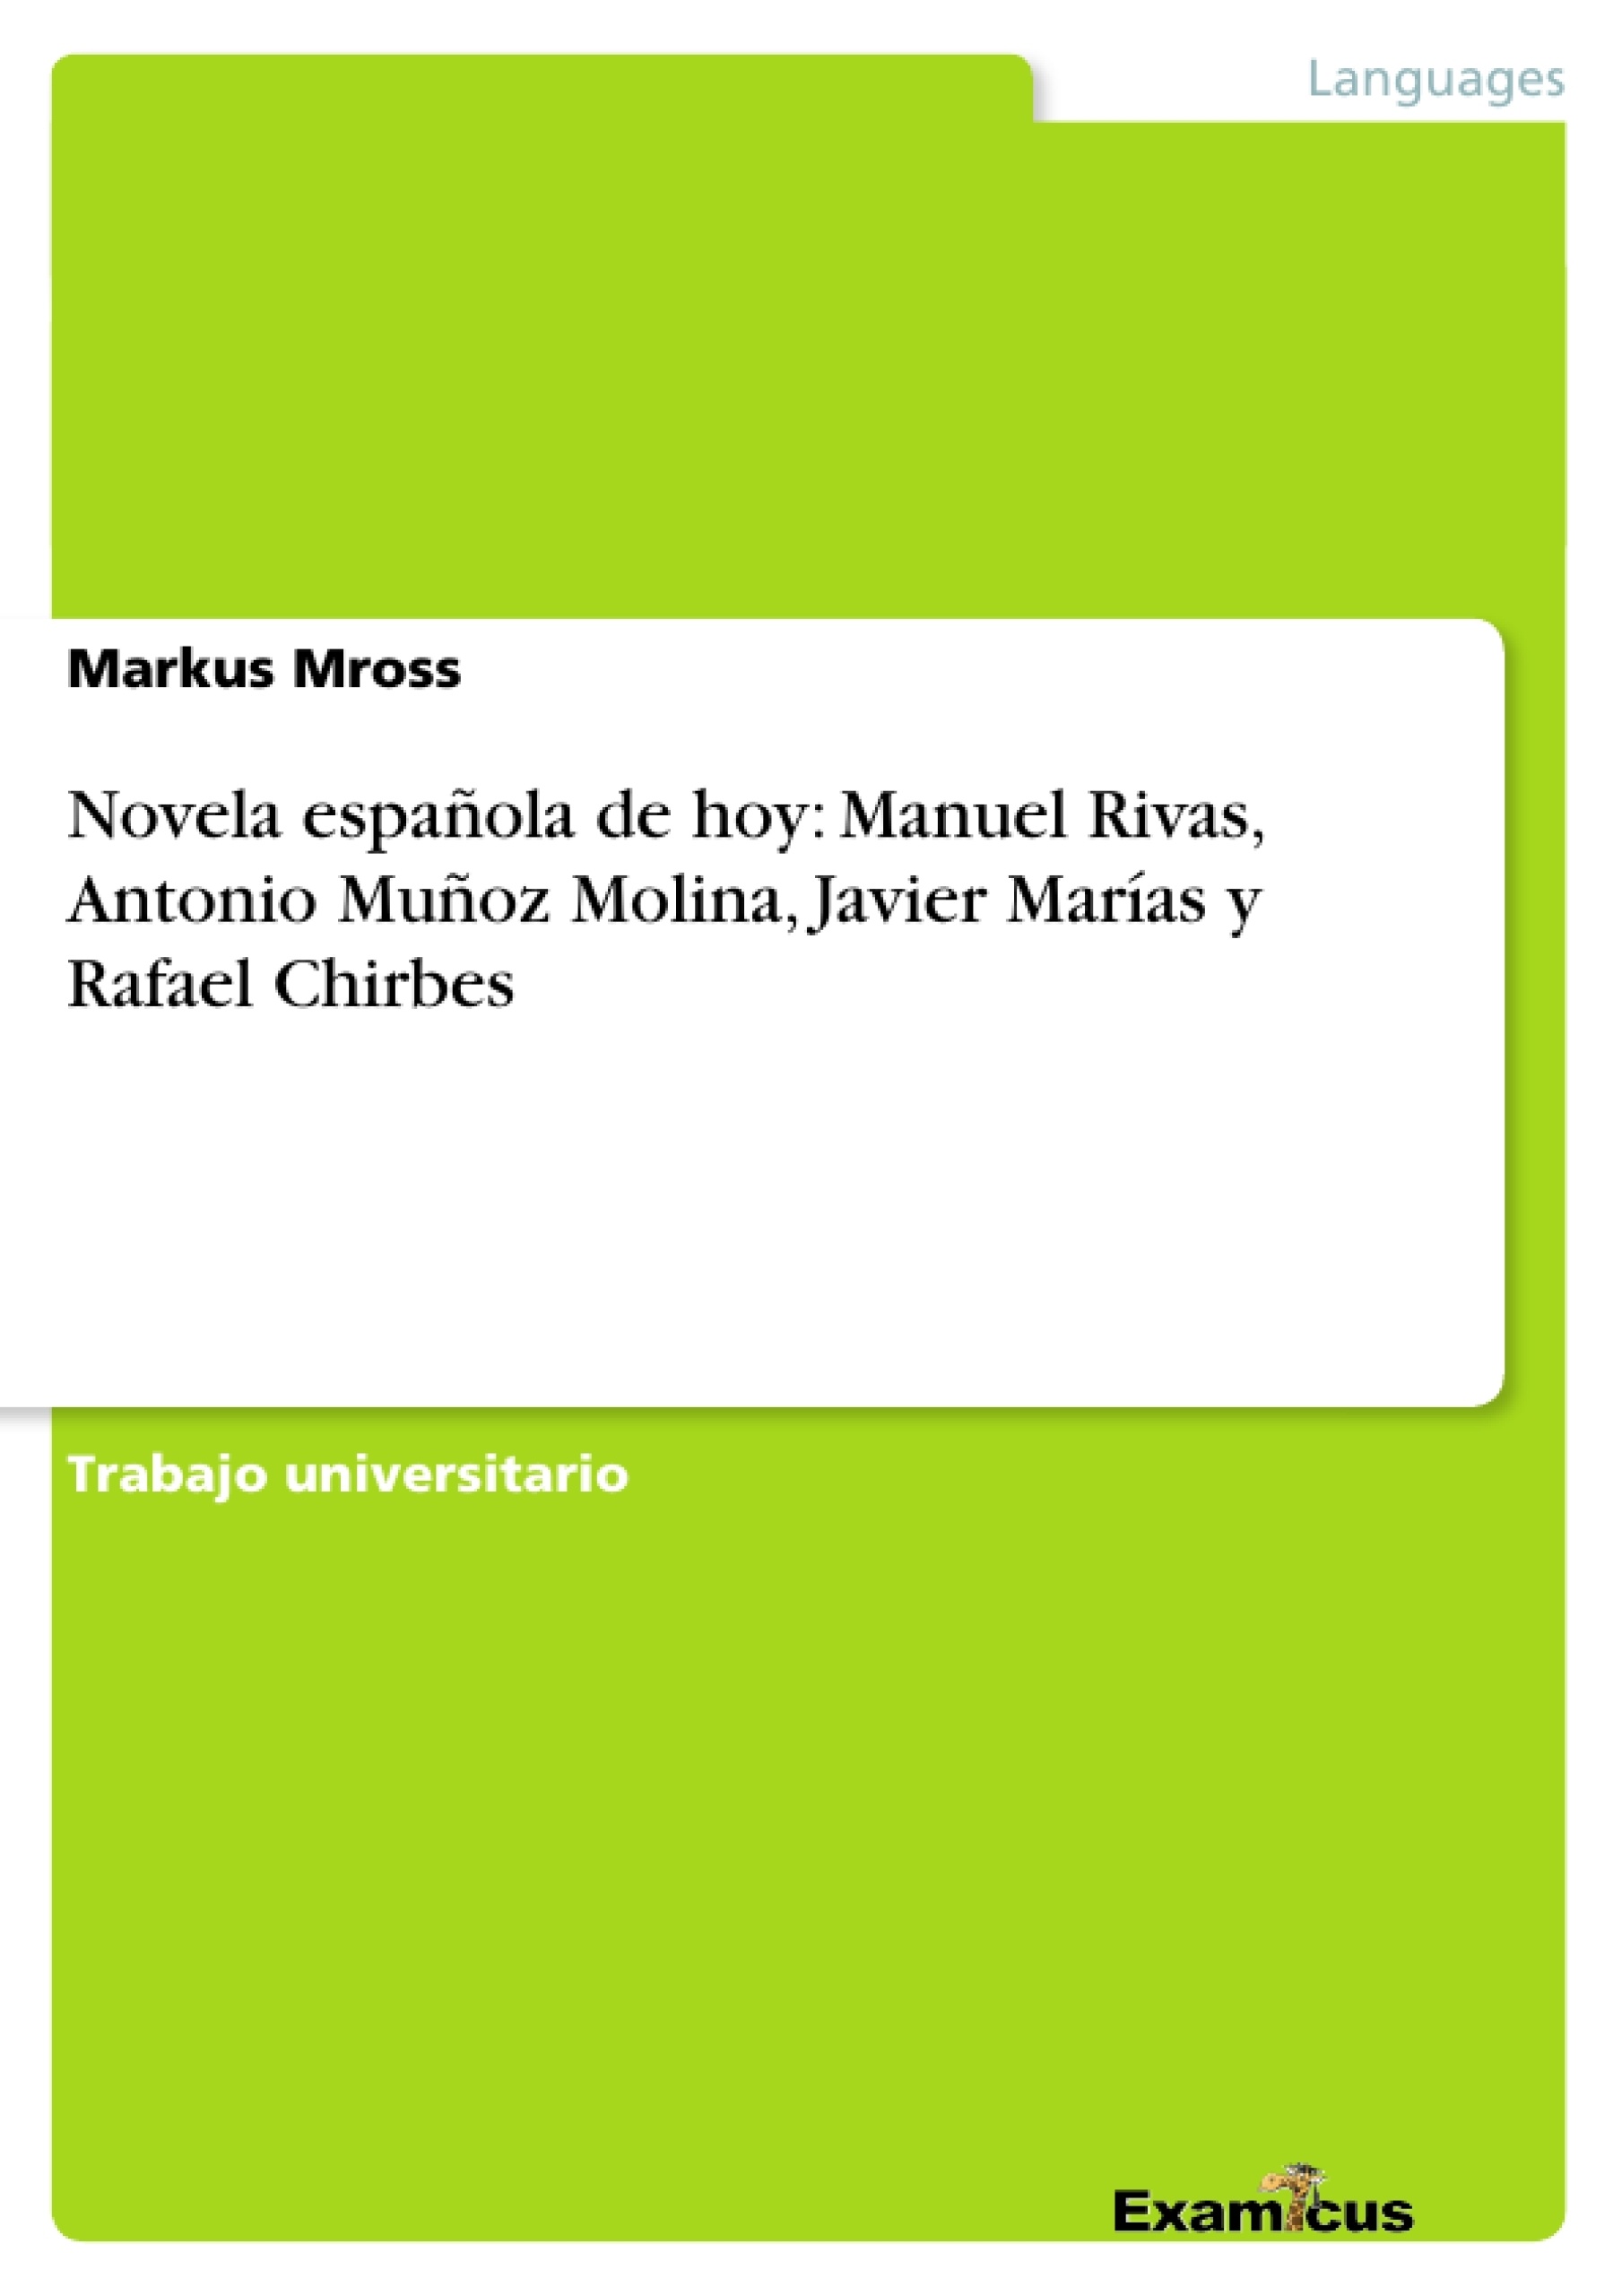 Titel: Novela española de hoy: Manuel Rivas, Antonio Muñoz Molina, Javier Marías y Rafael Chirbes